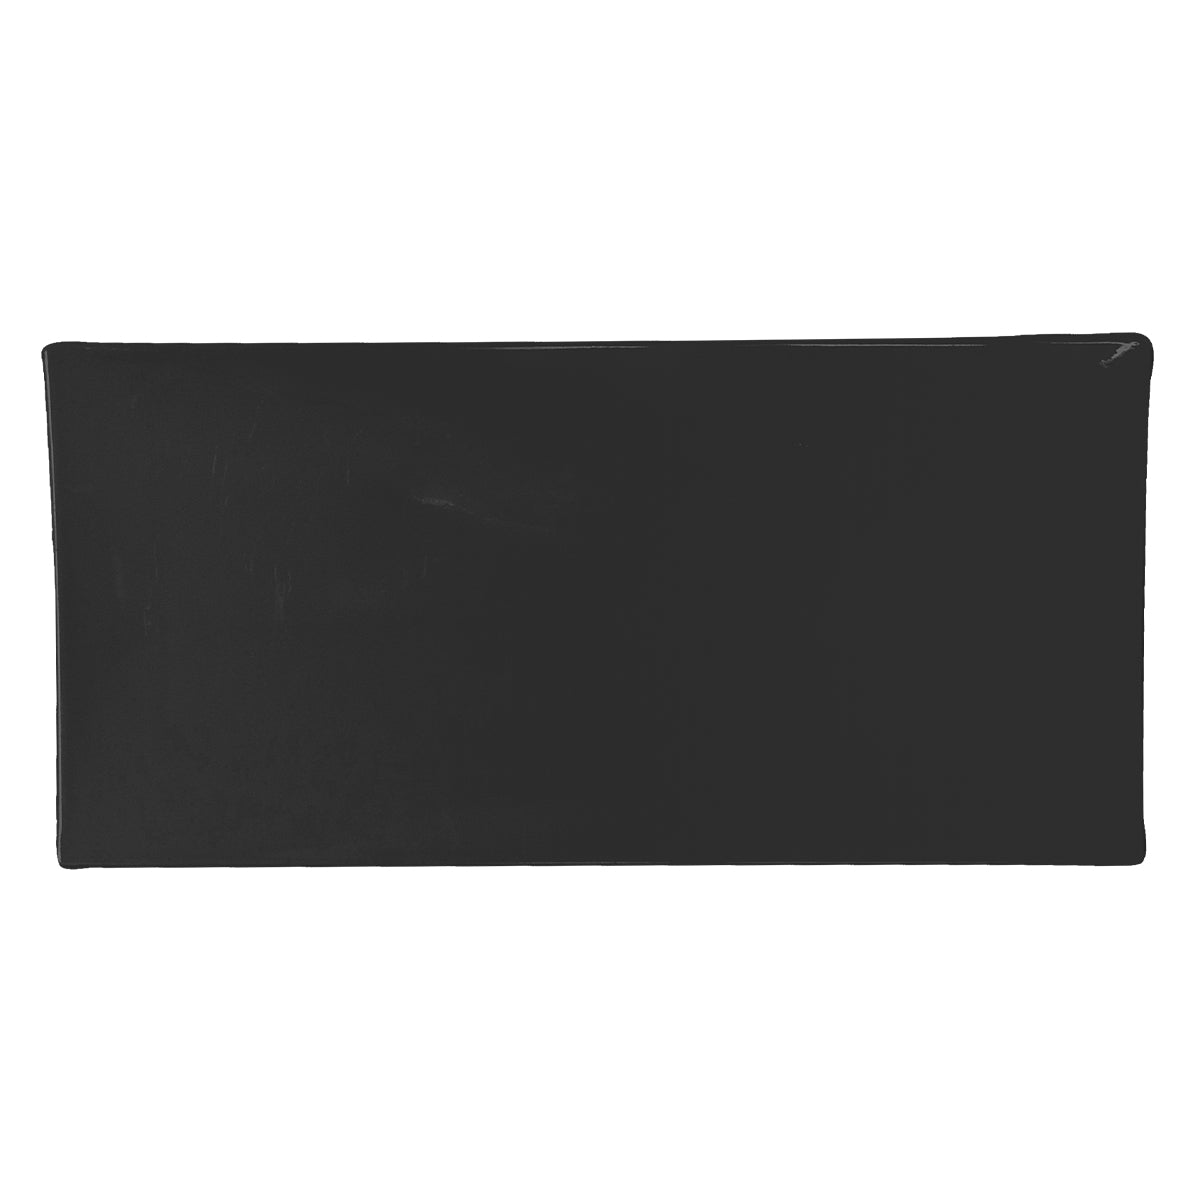 Bandeja Neo de 30 x 14 cm de Melamina Color Negra